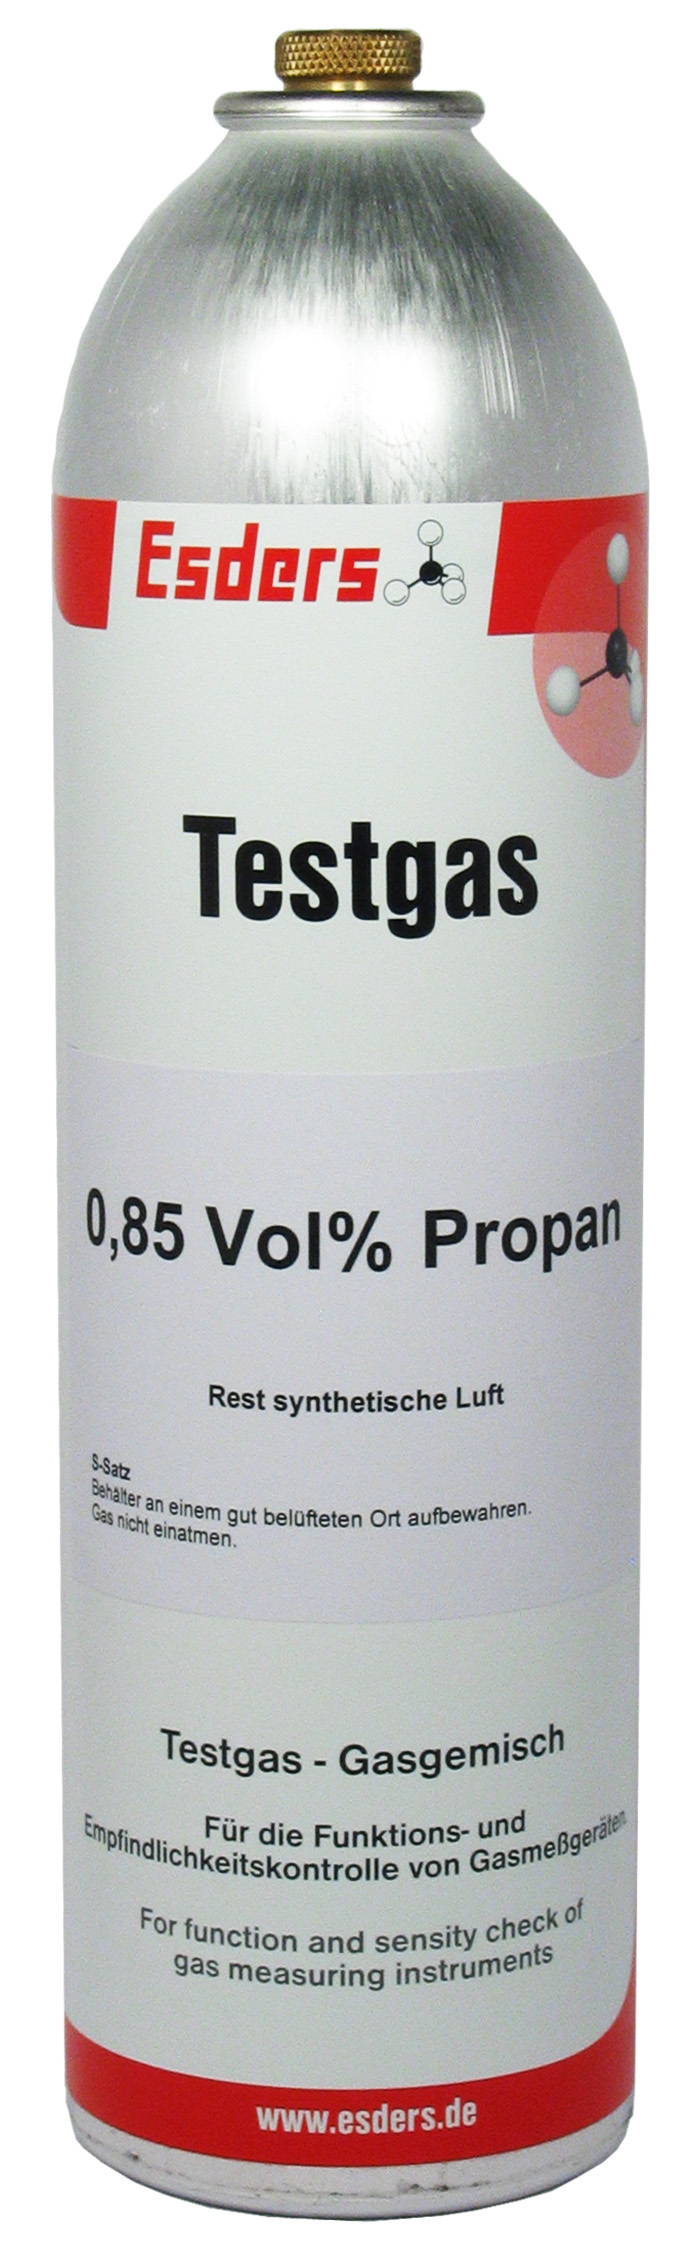 Test gas propane 0.85 vol% - Solo 12